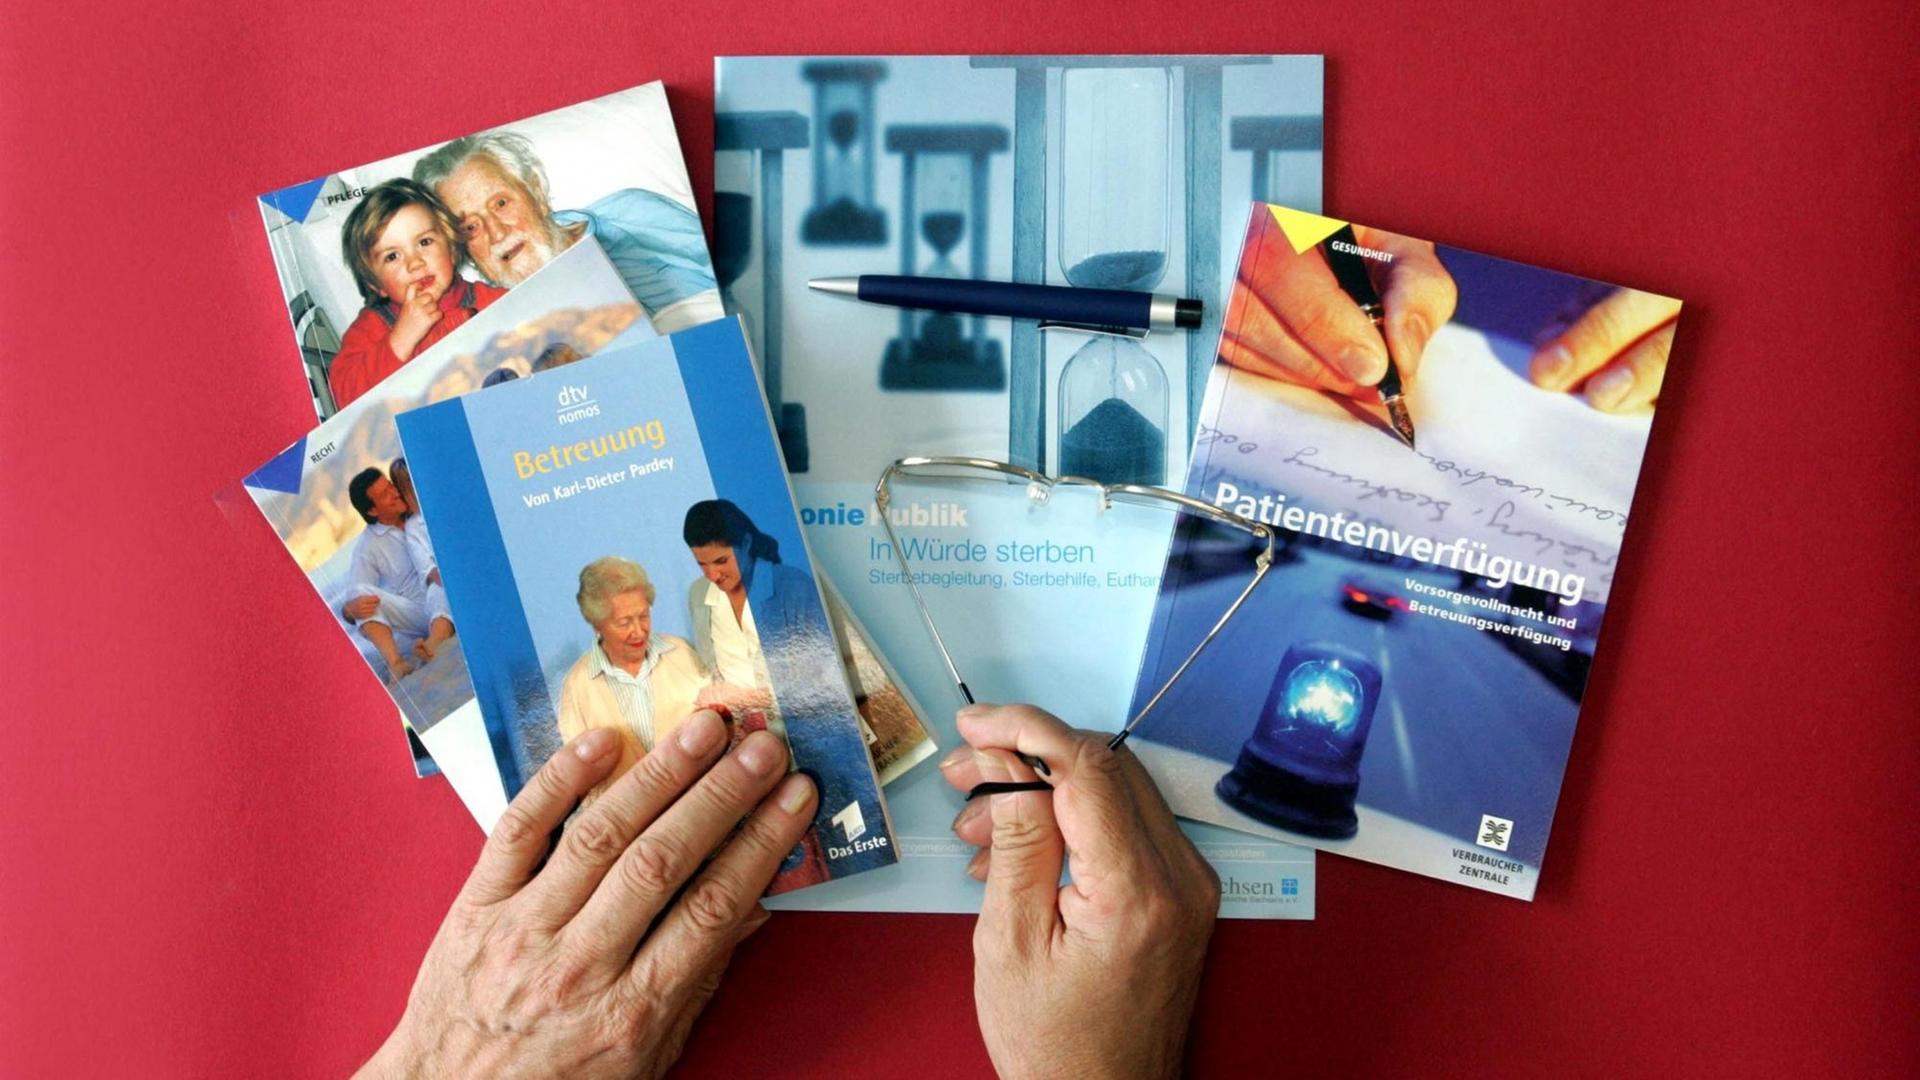 Bücher, Broschüren und Nachschlagewerke, die sich mit Patientenverfügungen sowie der Pflege und Sterbehilfe befassen, liegen auf einem roten Tisch.